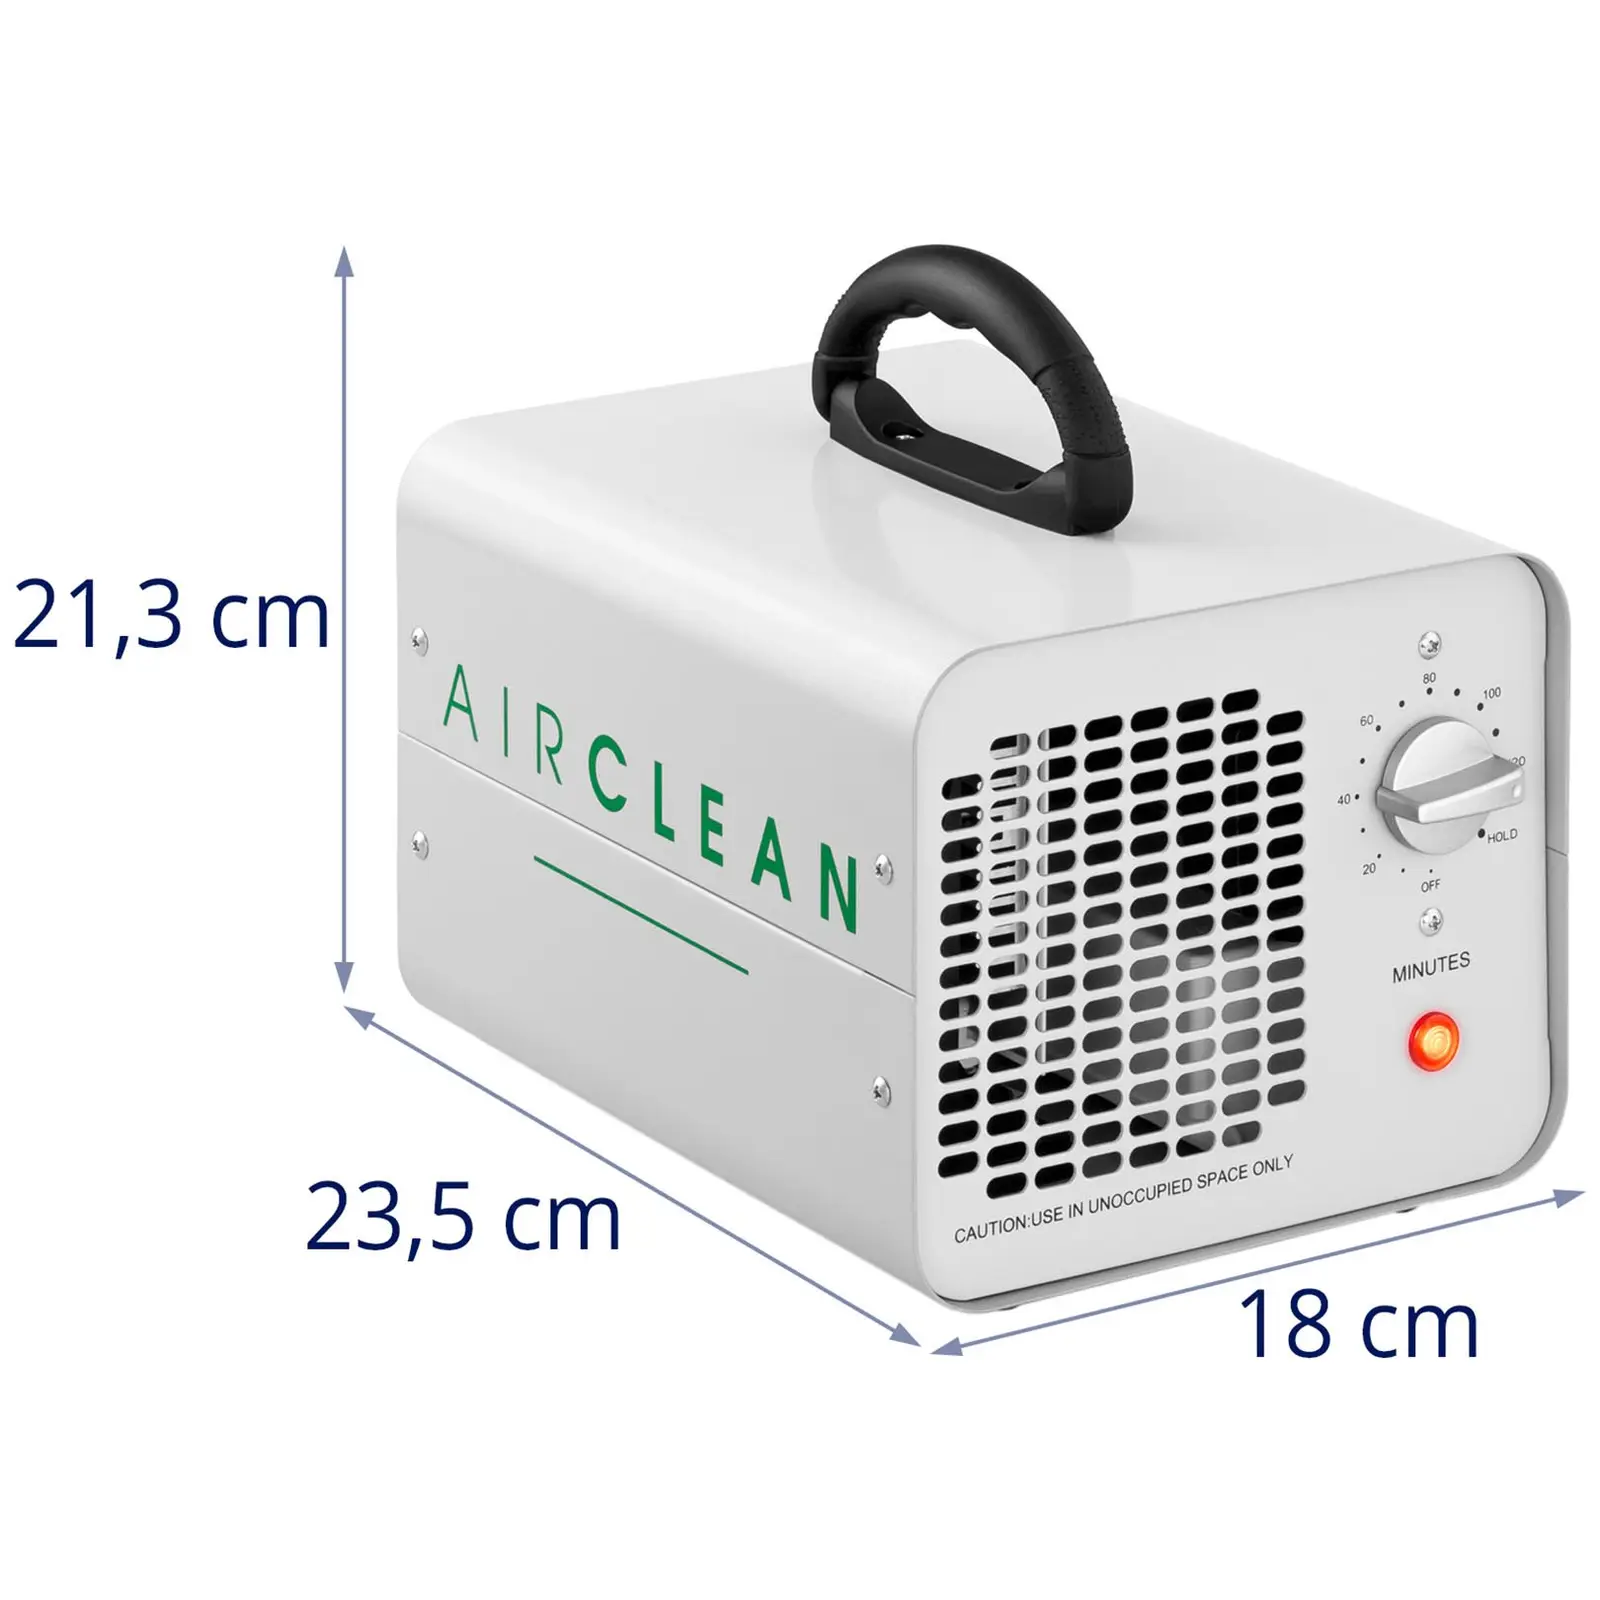 Industrijski čistilnik zraka - 7,000 mg/h - 94 W